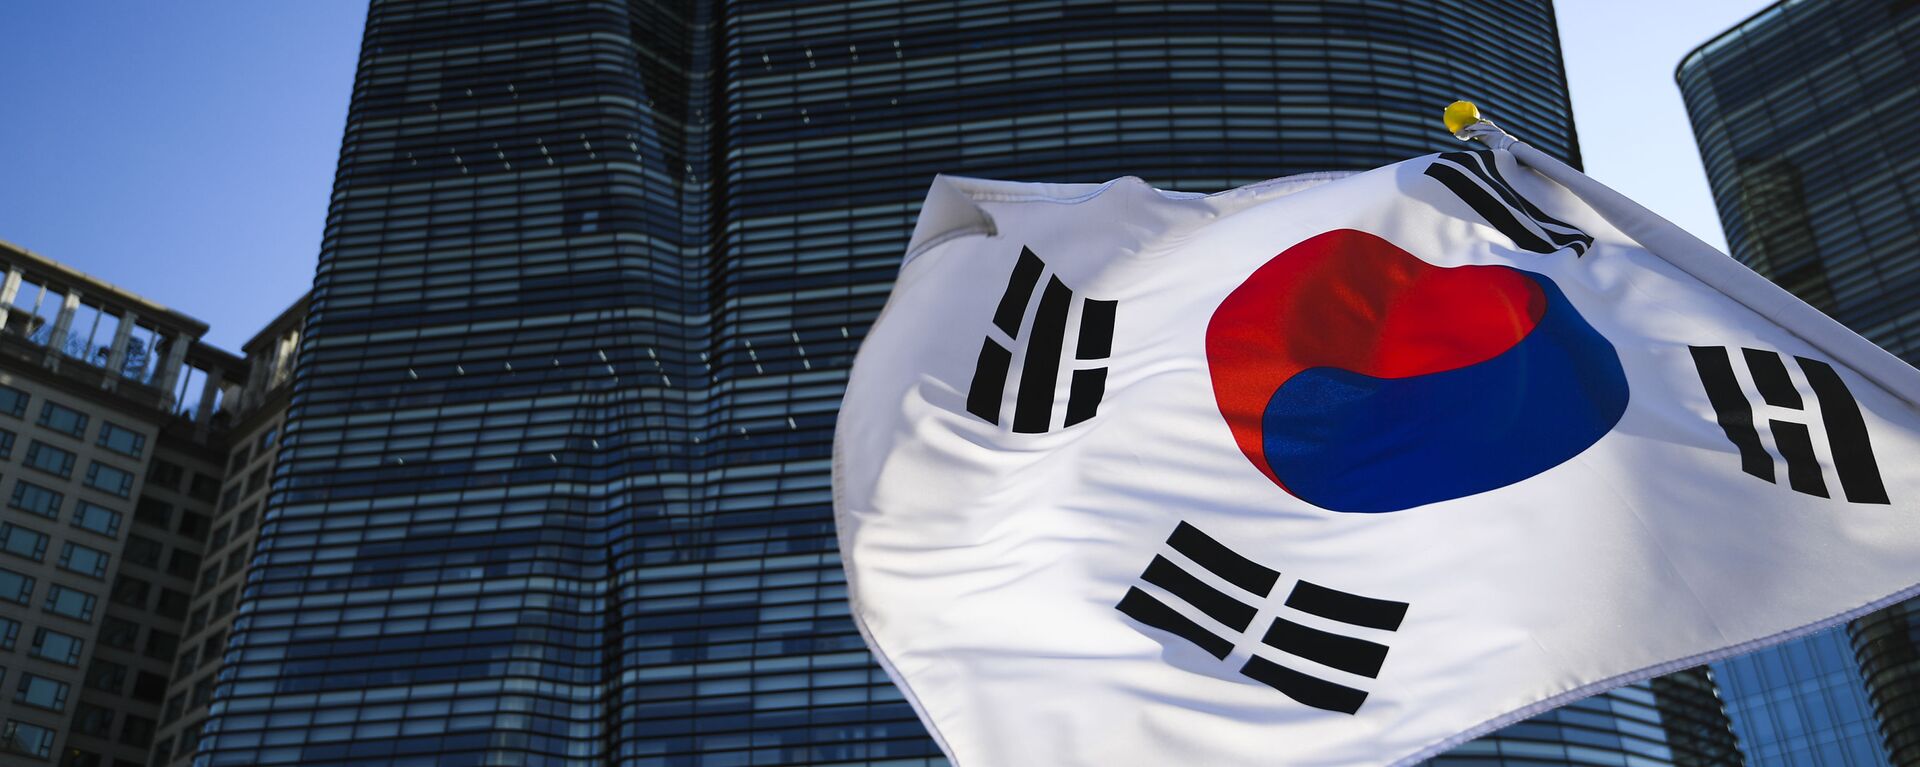 Флаг Южной Кореи в Сеуле. - Sputnik Узбекистан, 1920, 14.04.2021